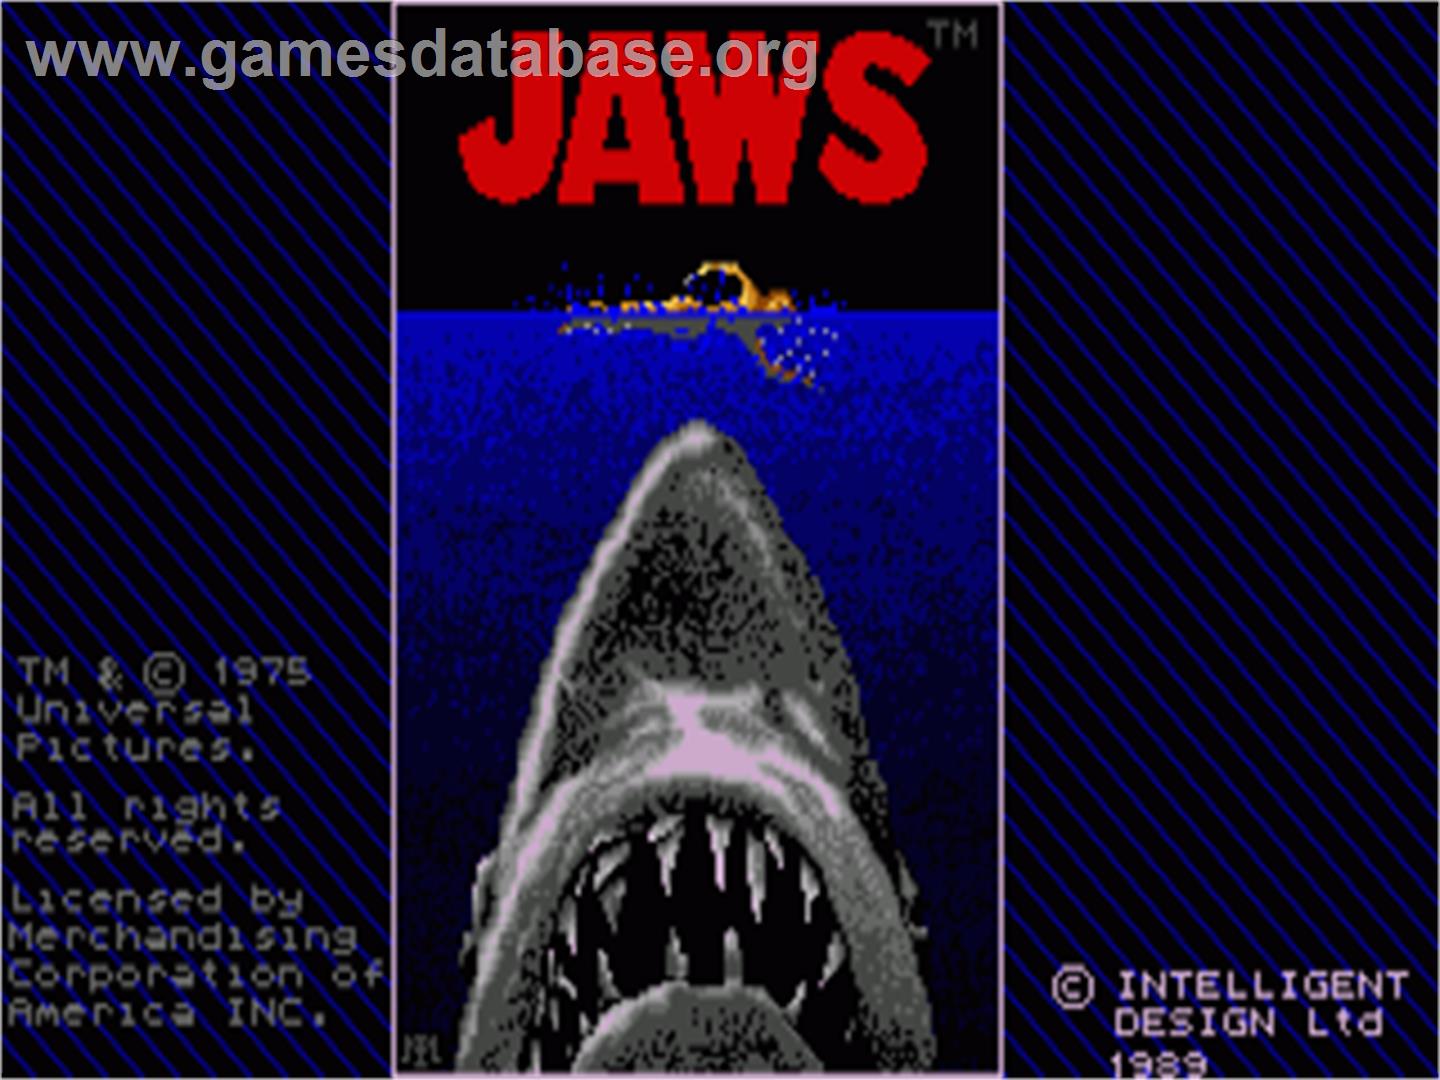 Jaws - Commodore Amiga - Artwork - Title Screen